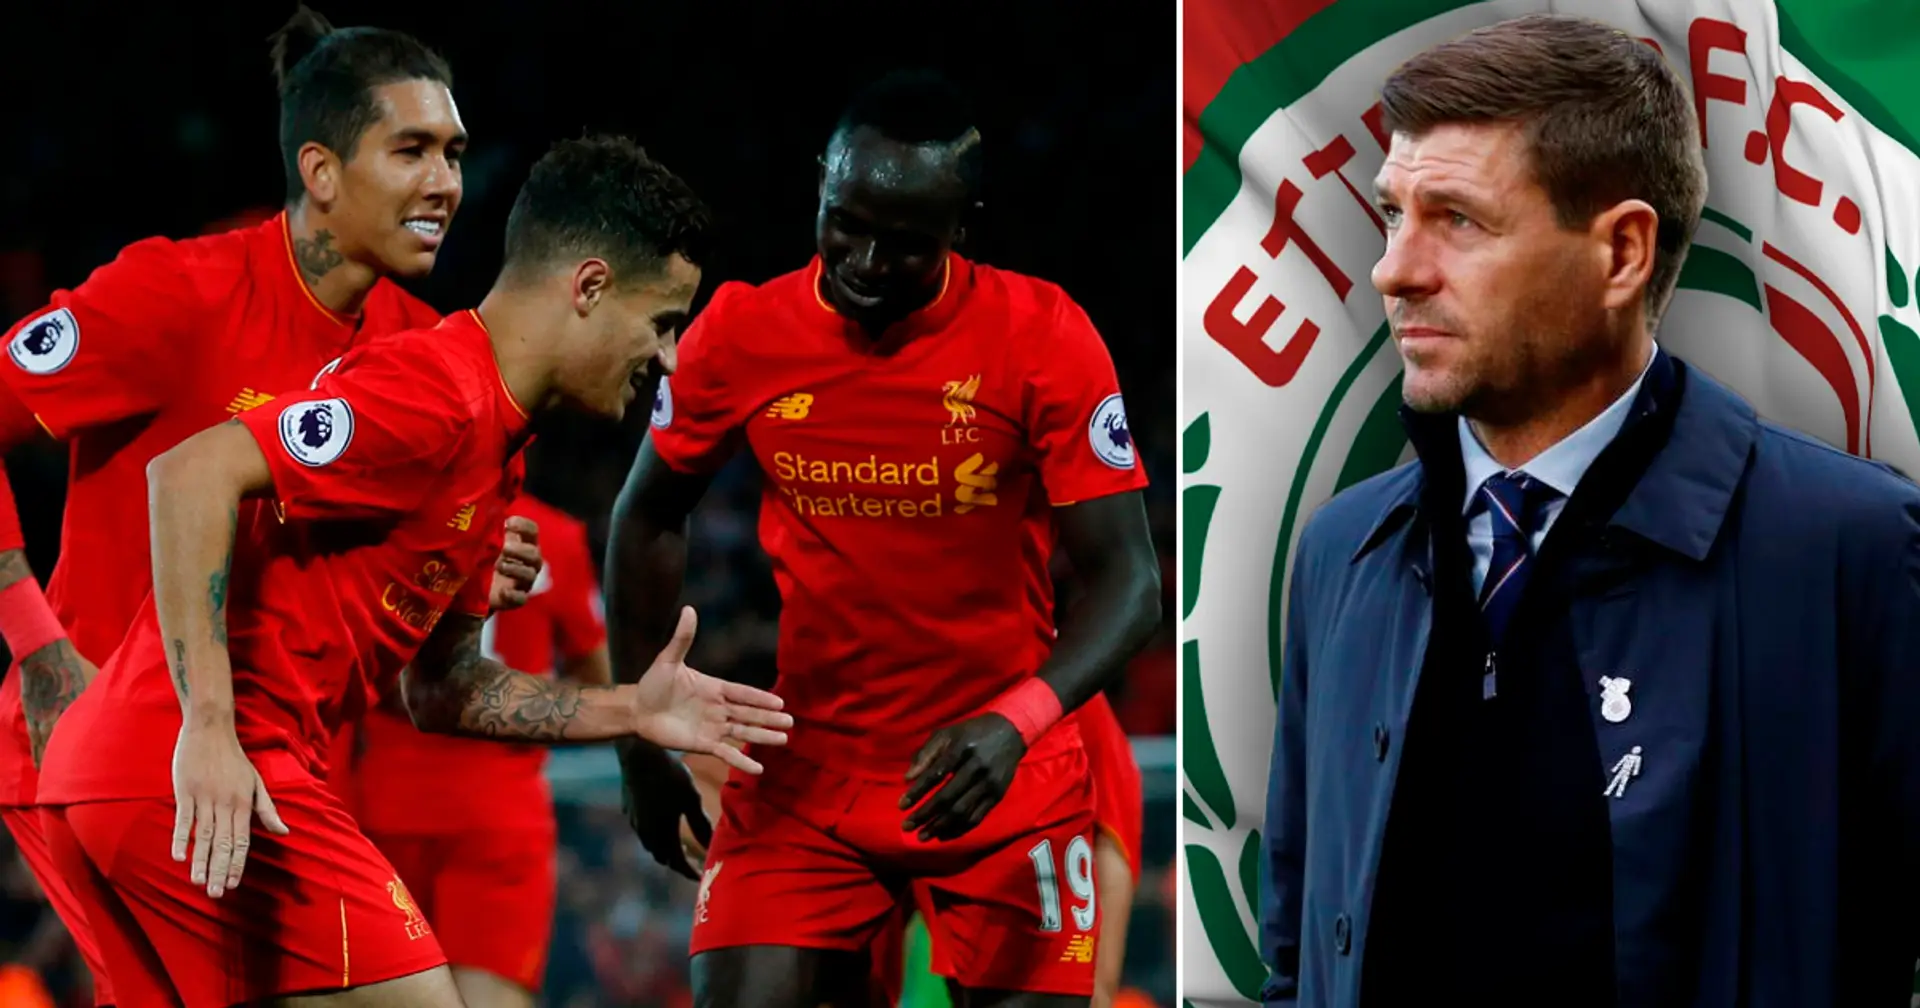 Dies könnte Bayern beeinflussen: Steven Gerrard will bei seinem neuen saudischen Verein legendäres Liverpool-Trio wieder vereinen